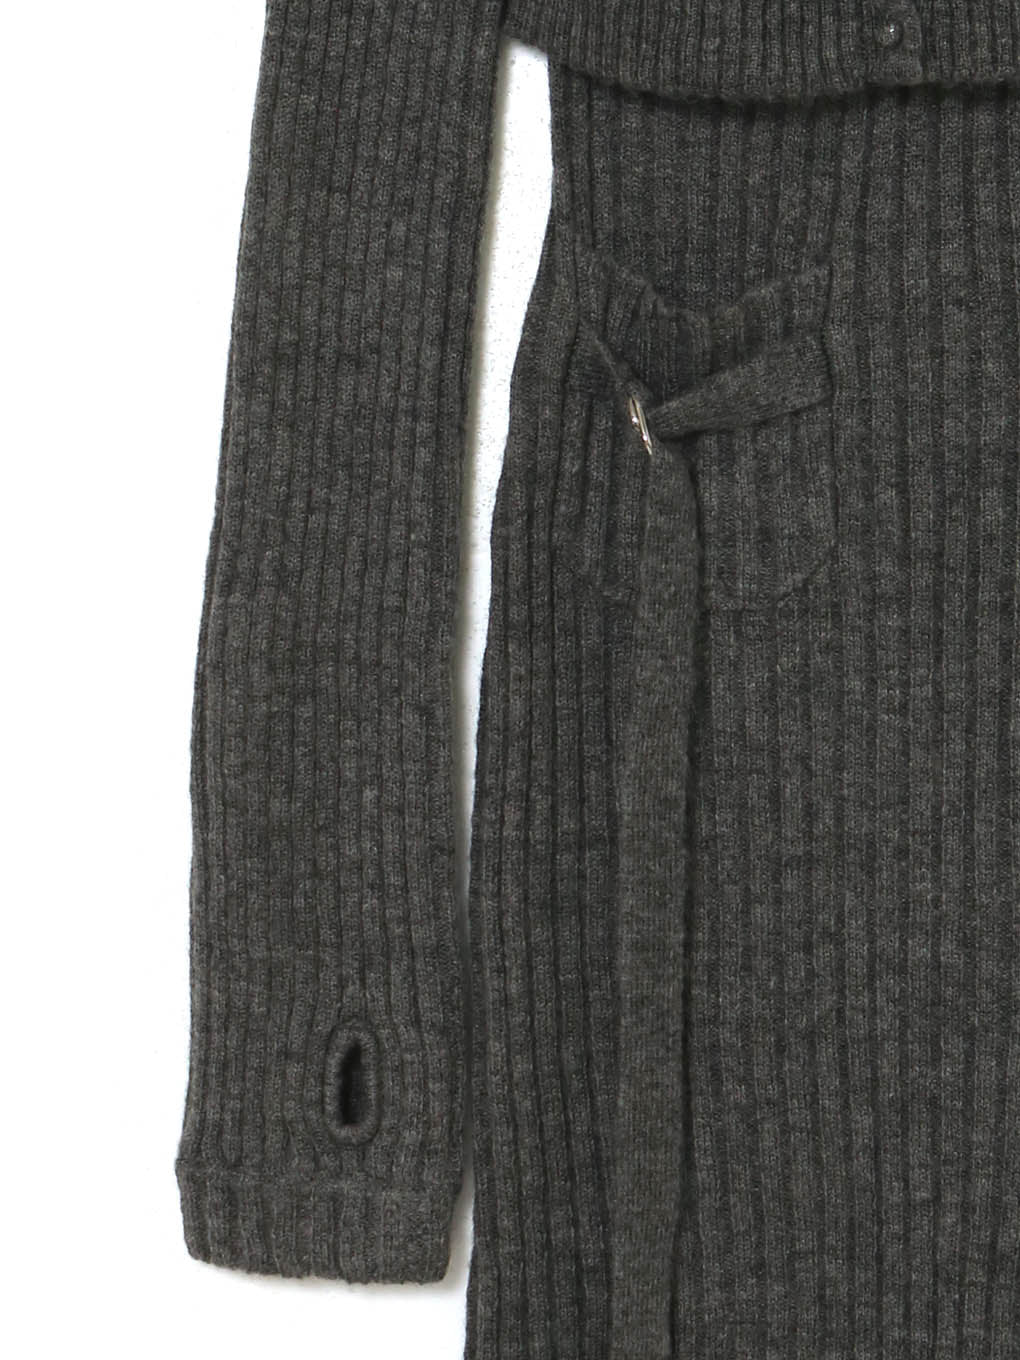 【新品試着のみ】andmary Cameo knit set cardigan替え用のボタンもあります